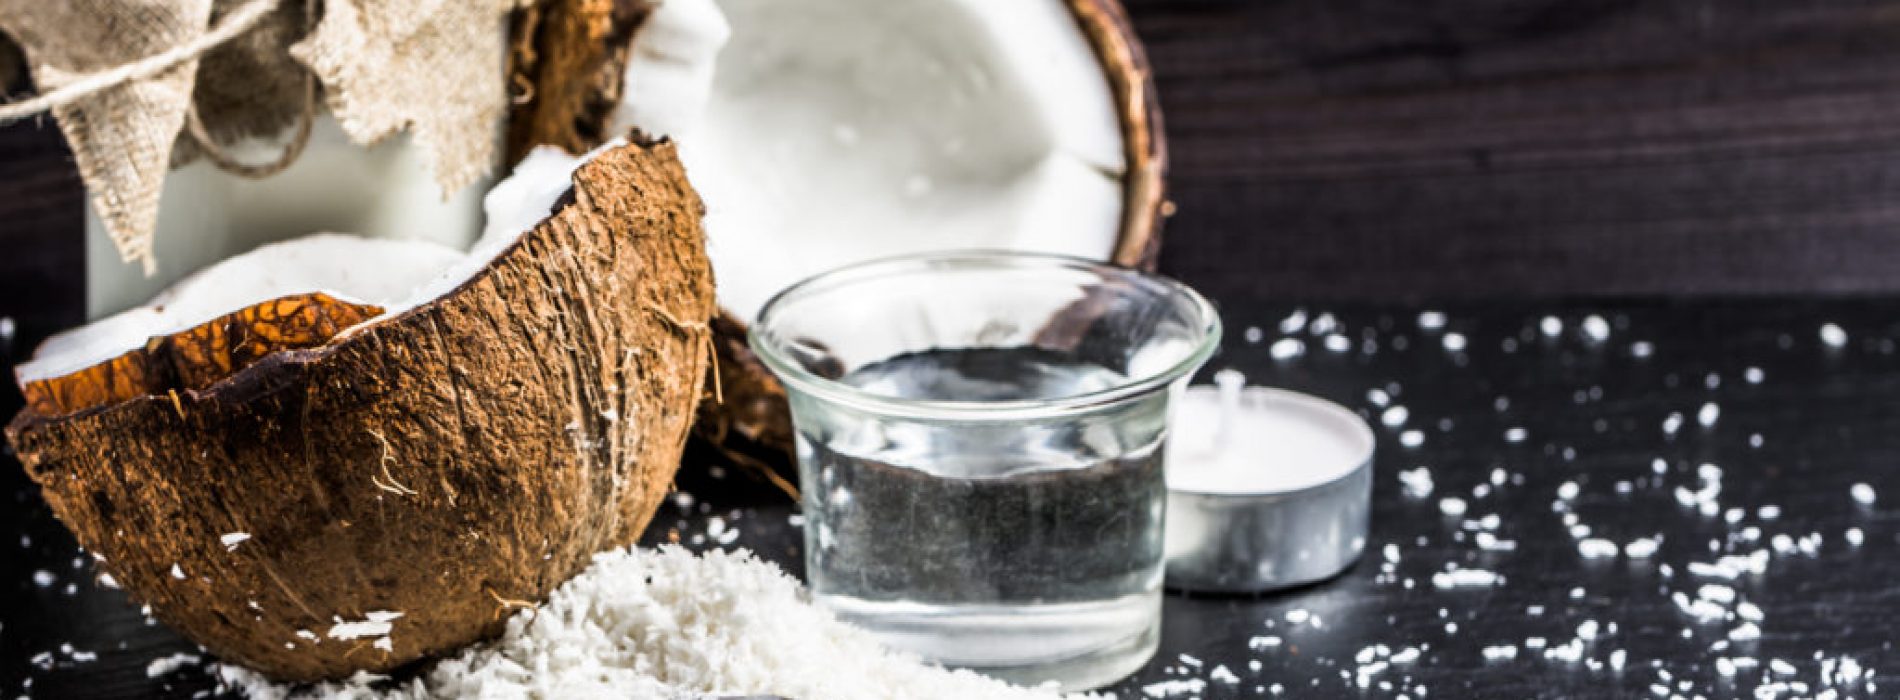 Onderzoek onthult dat kokosolie een beter insectenverdelger is vergeleken met DEET, een schadelijk chemisch ingrediënt